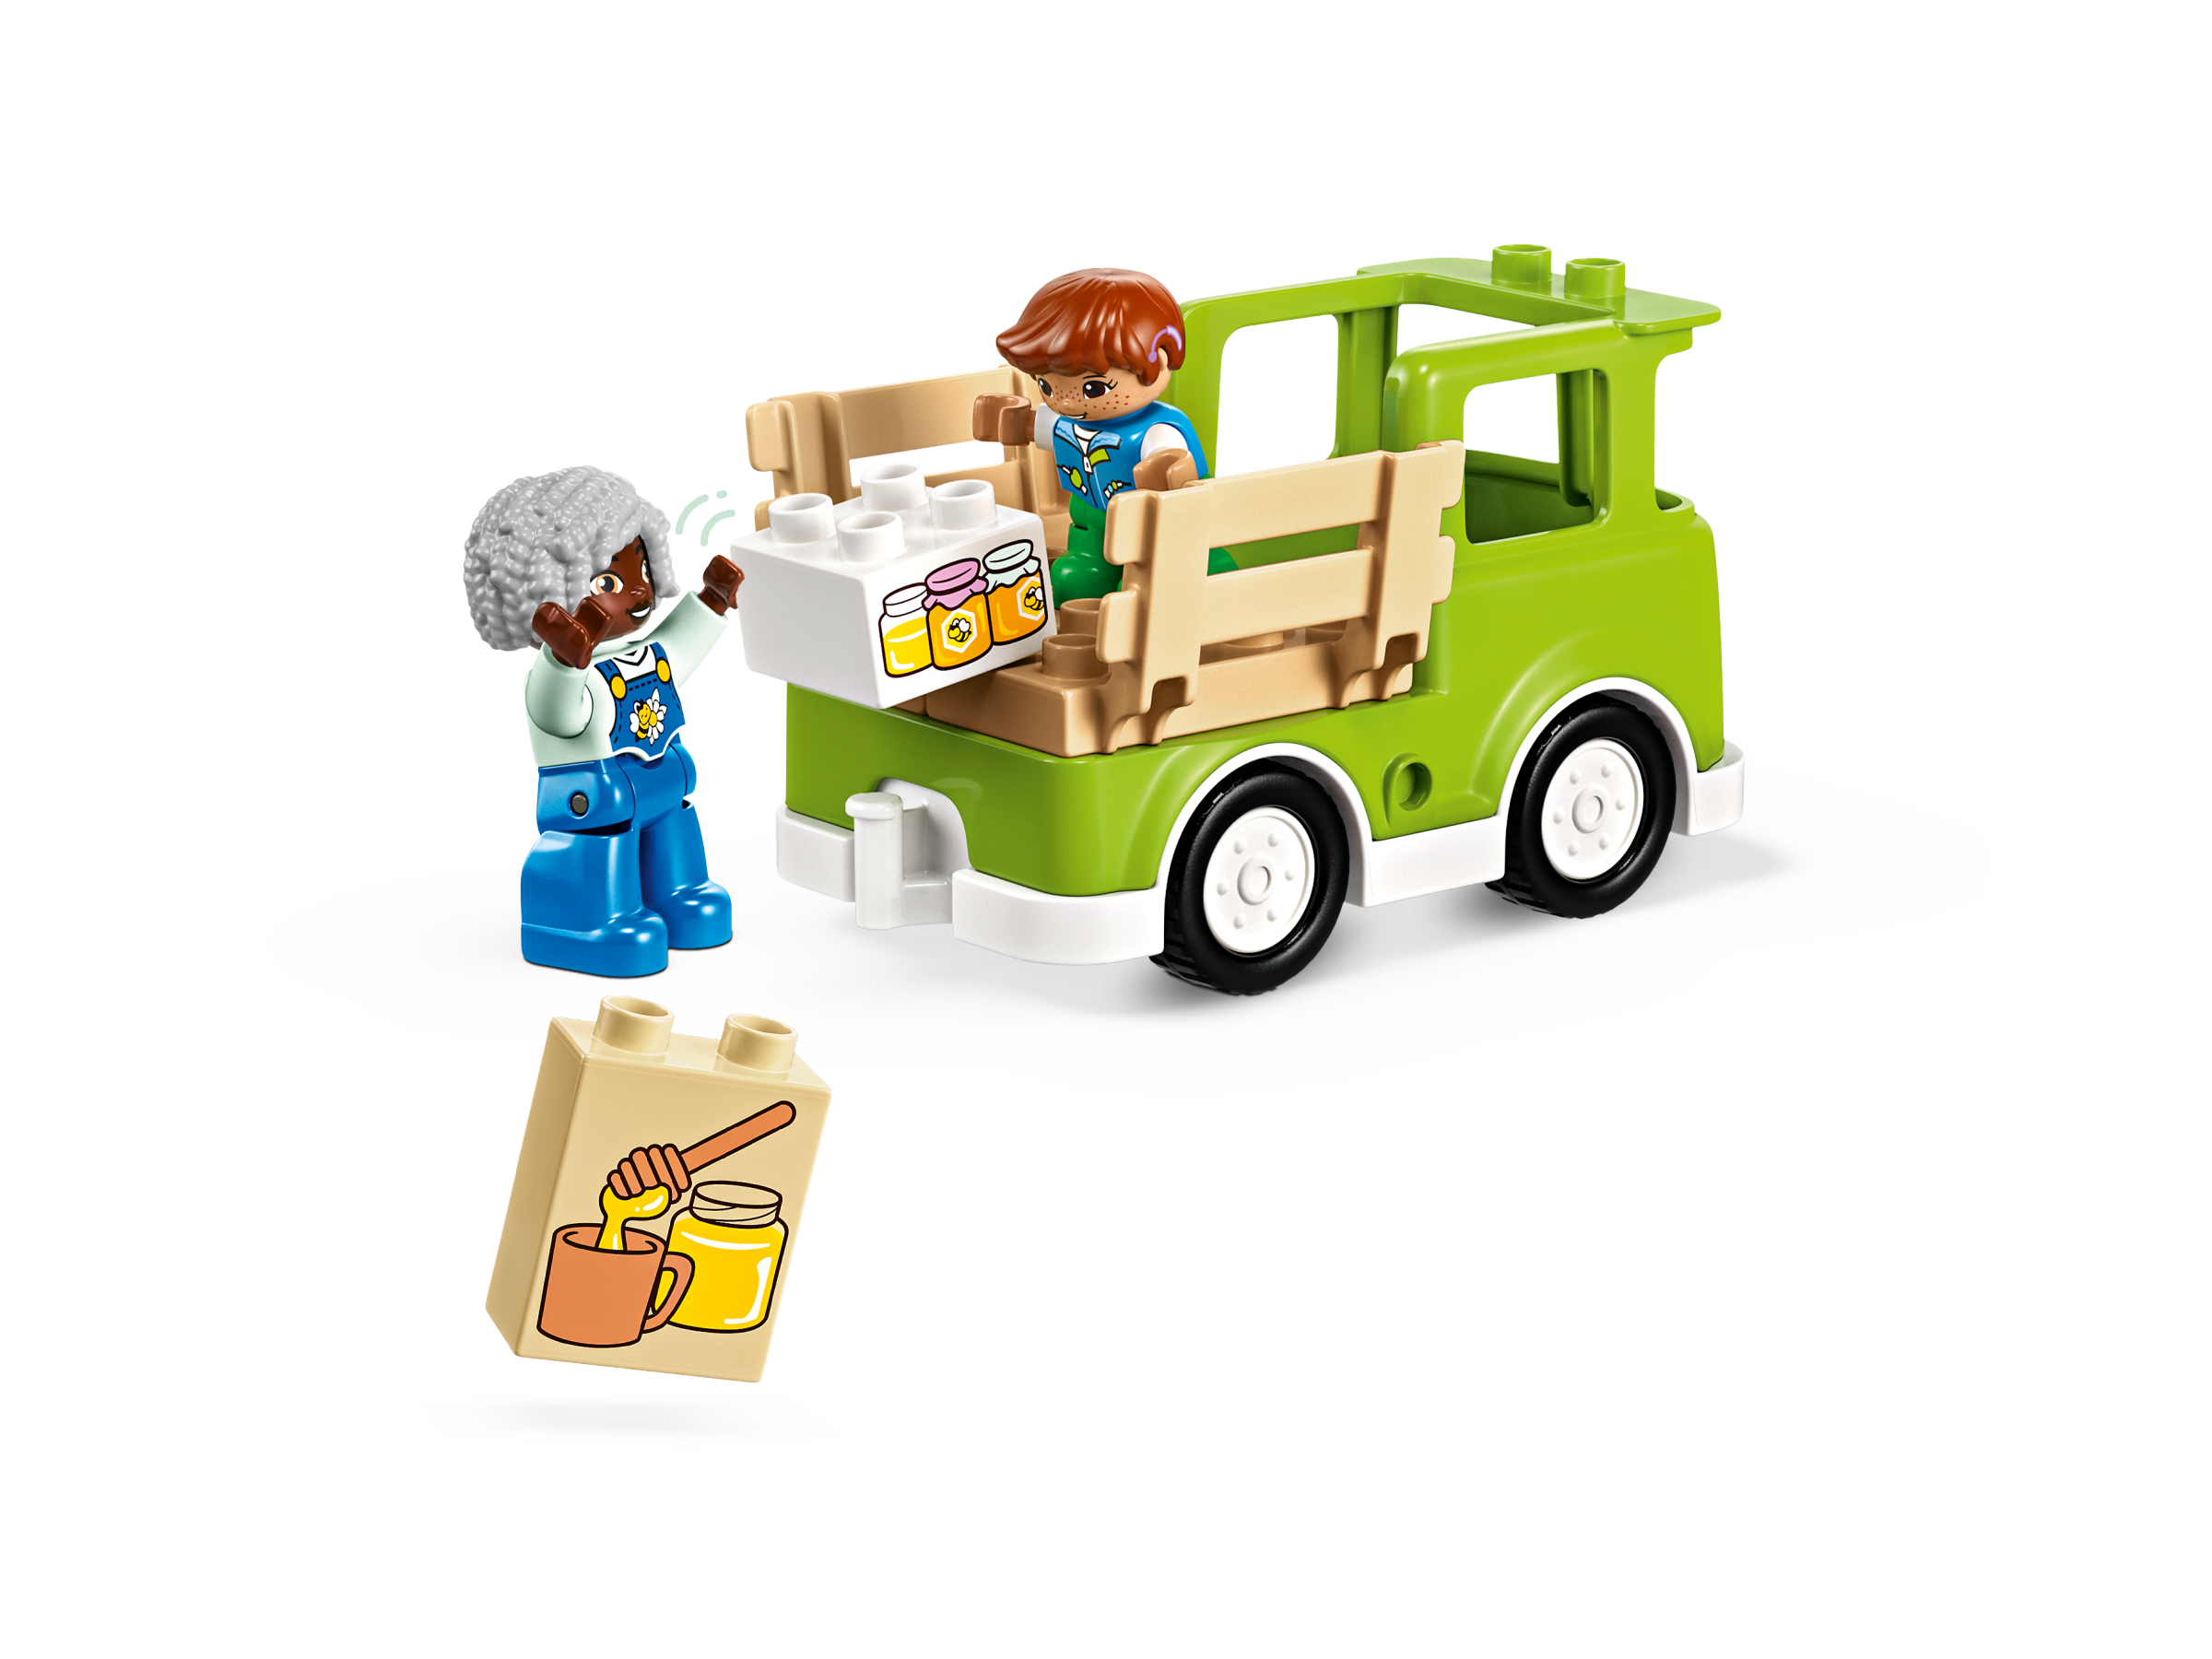 LEGO DUPLO Ma Ville 10419 Prendre Soin des Abeilles et des Ruches, Jouet  Éducatif pour Enfants, 2 Figurines d'Abeilles pas cher 